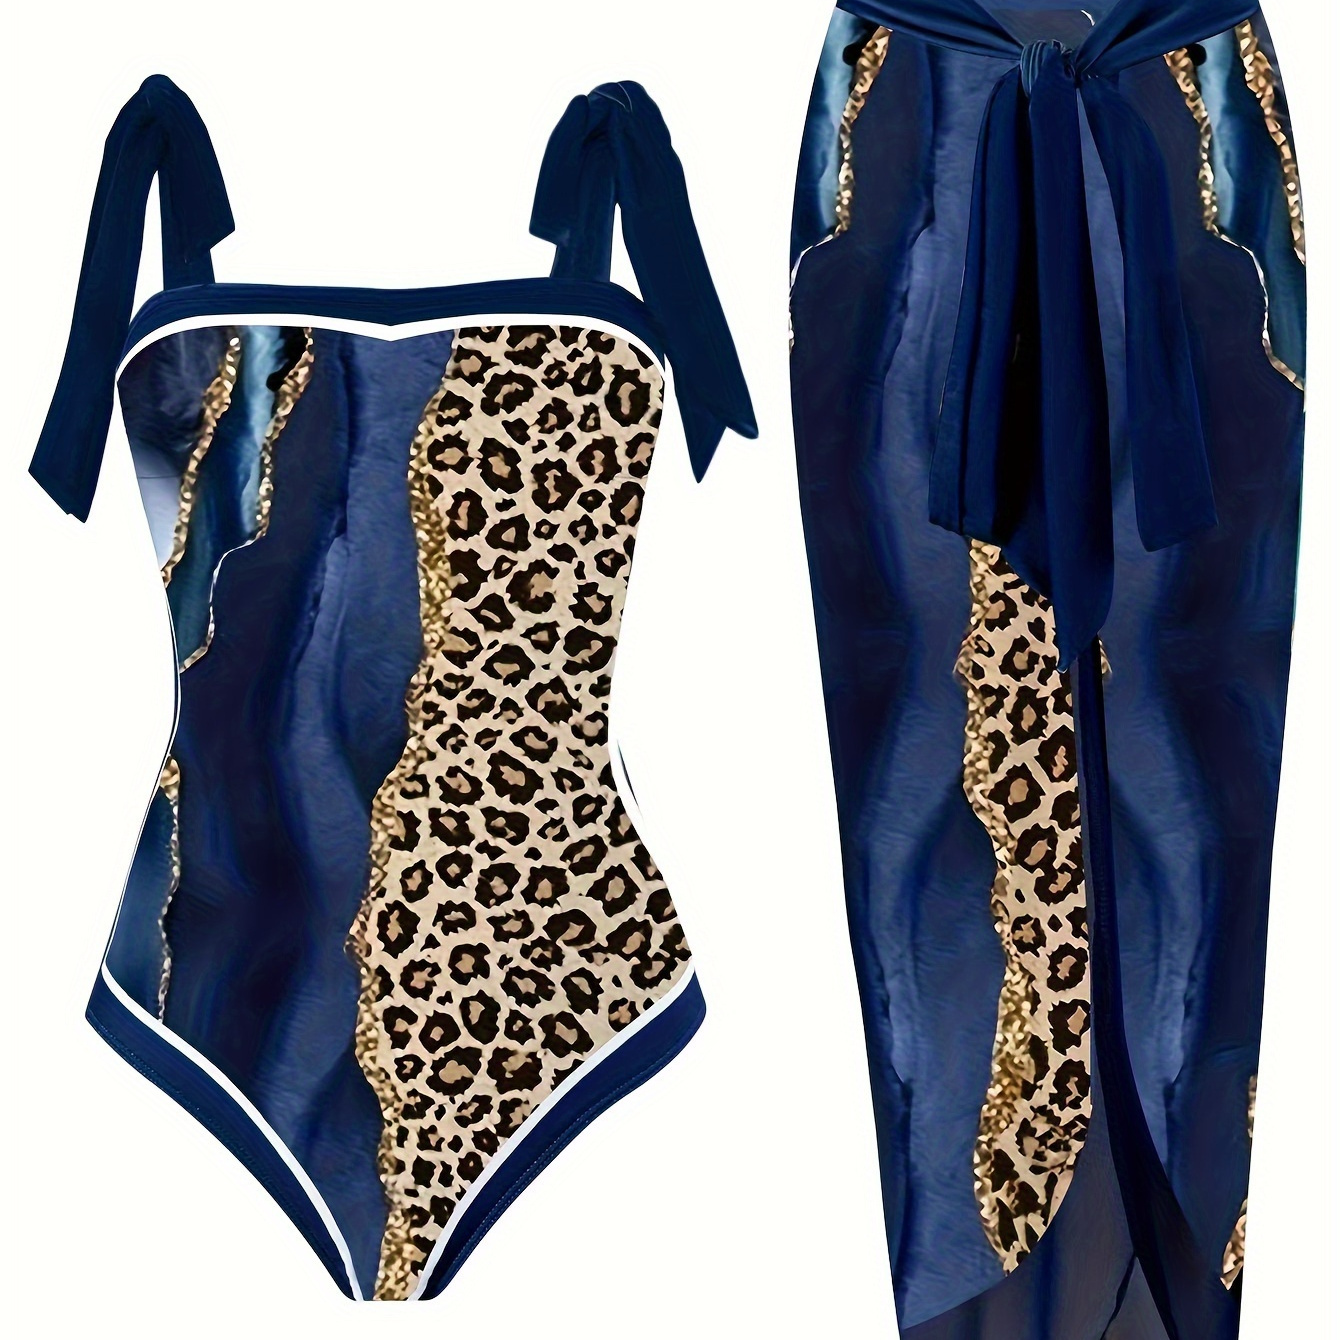 

Plus Size Elegant Swimsuit Set, Women's Plus Glitter Marble & Leopard Print Tie Shoulder 1 Piece Swimsuit & Bow Side Cover Up Skirt Bathing Suit 2 Piece Set